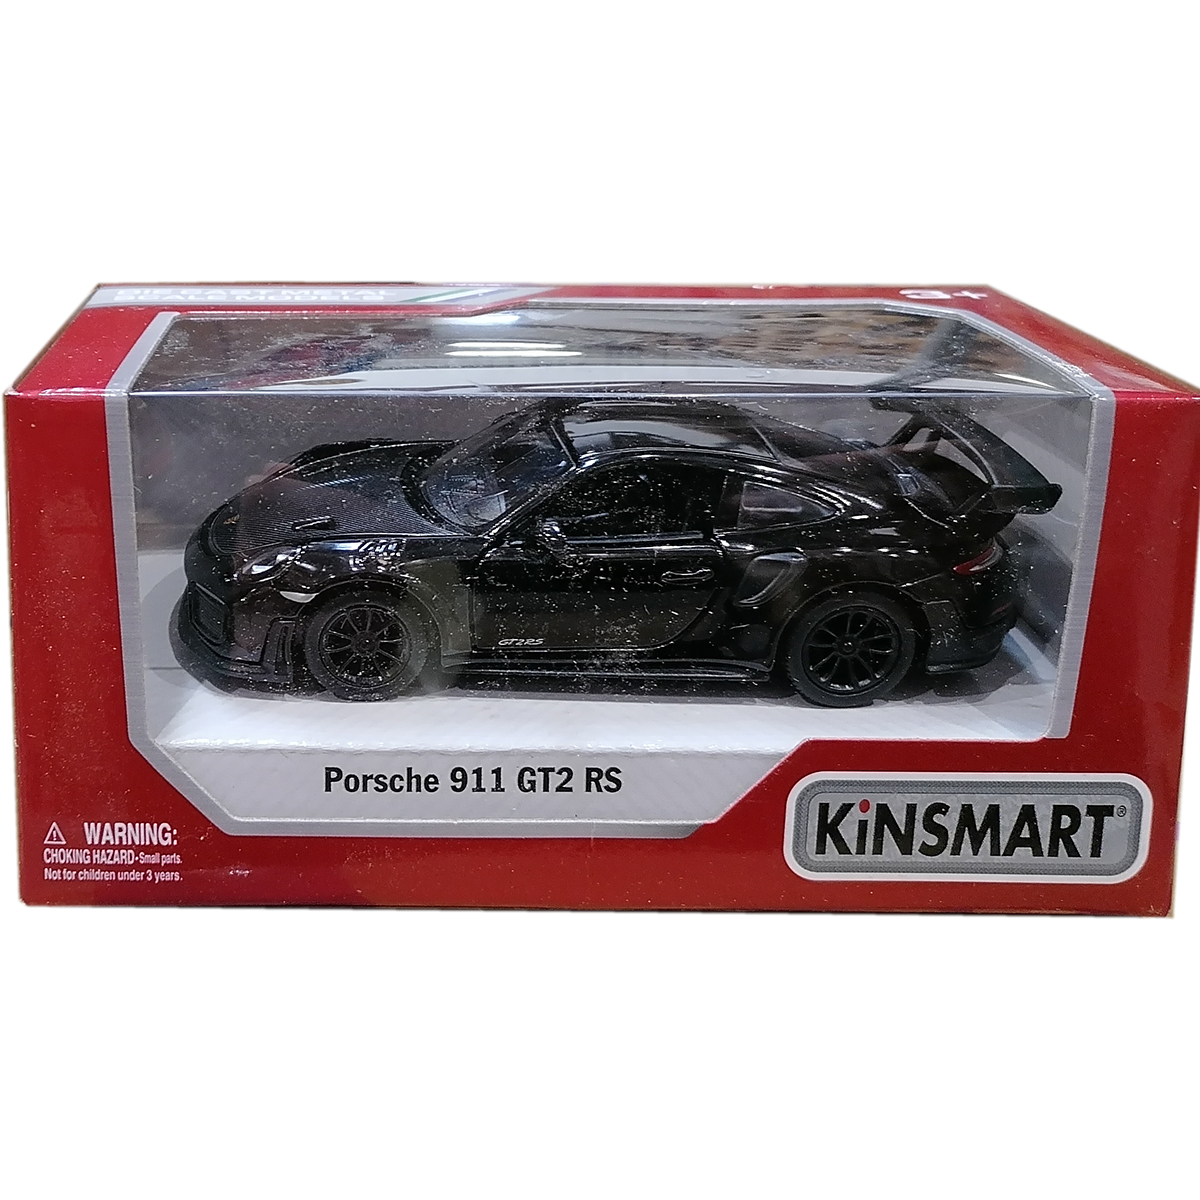 Masinuta din metal Kinsmart, Porsche 911 GT2 RS, Negru